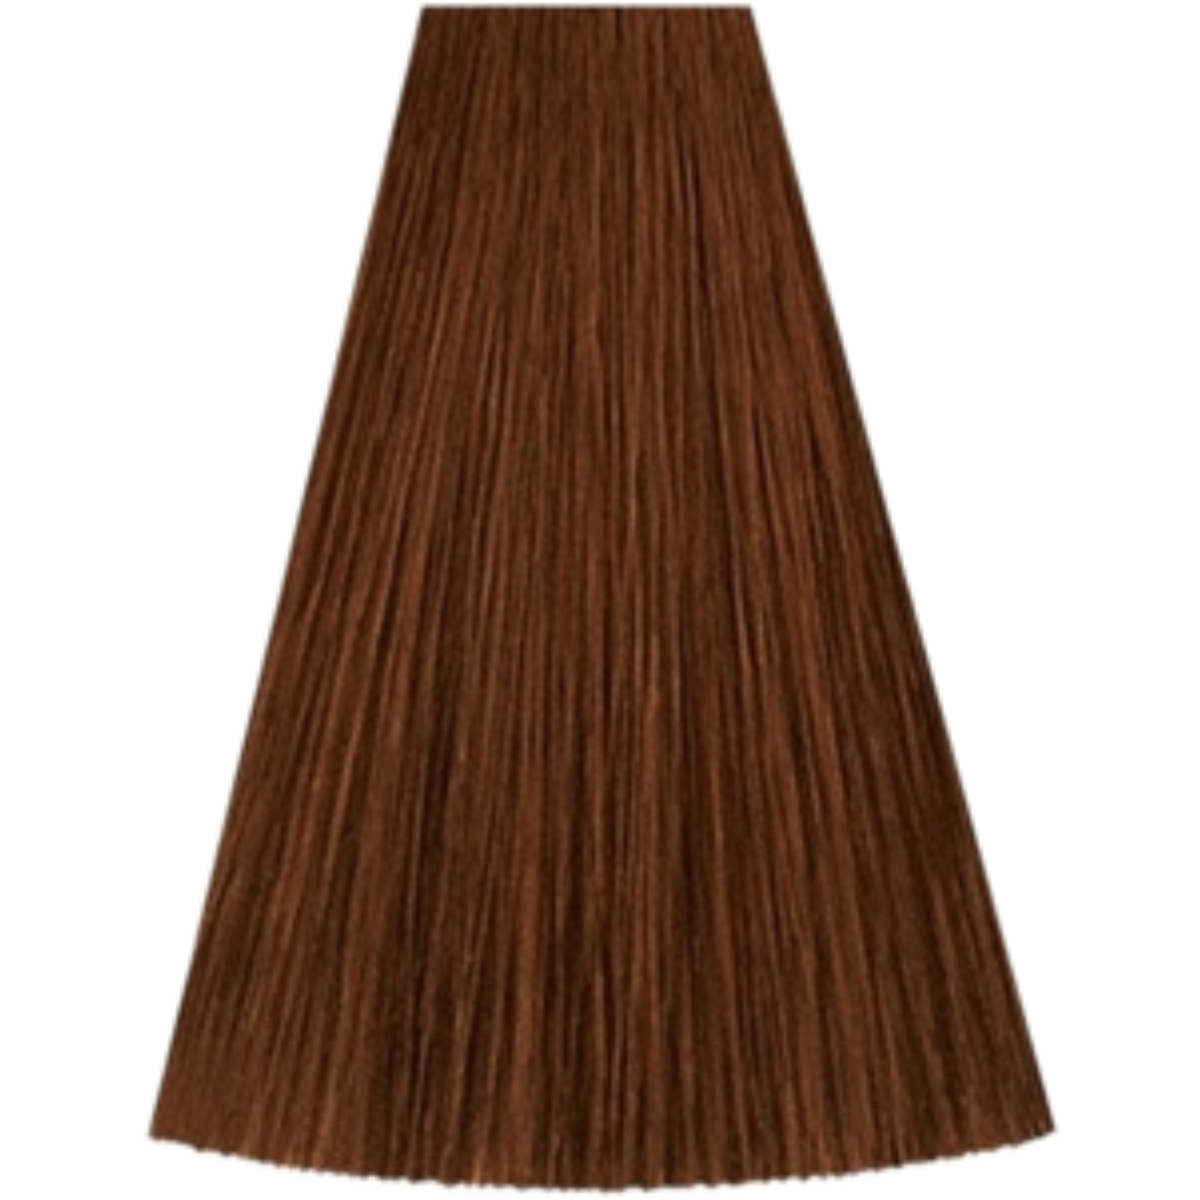 צבע שיער גוון 7/41 MEDIUM BLONDE RED ASH קאדוס KADUS צבע לשיער 60 גרם